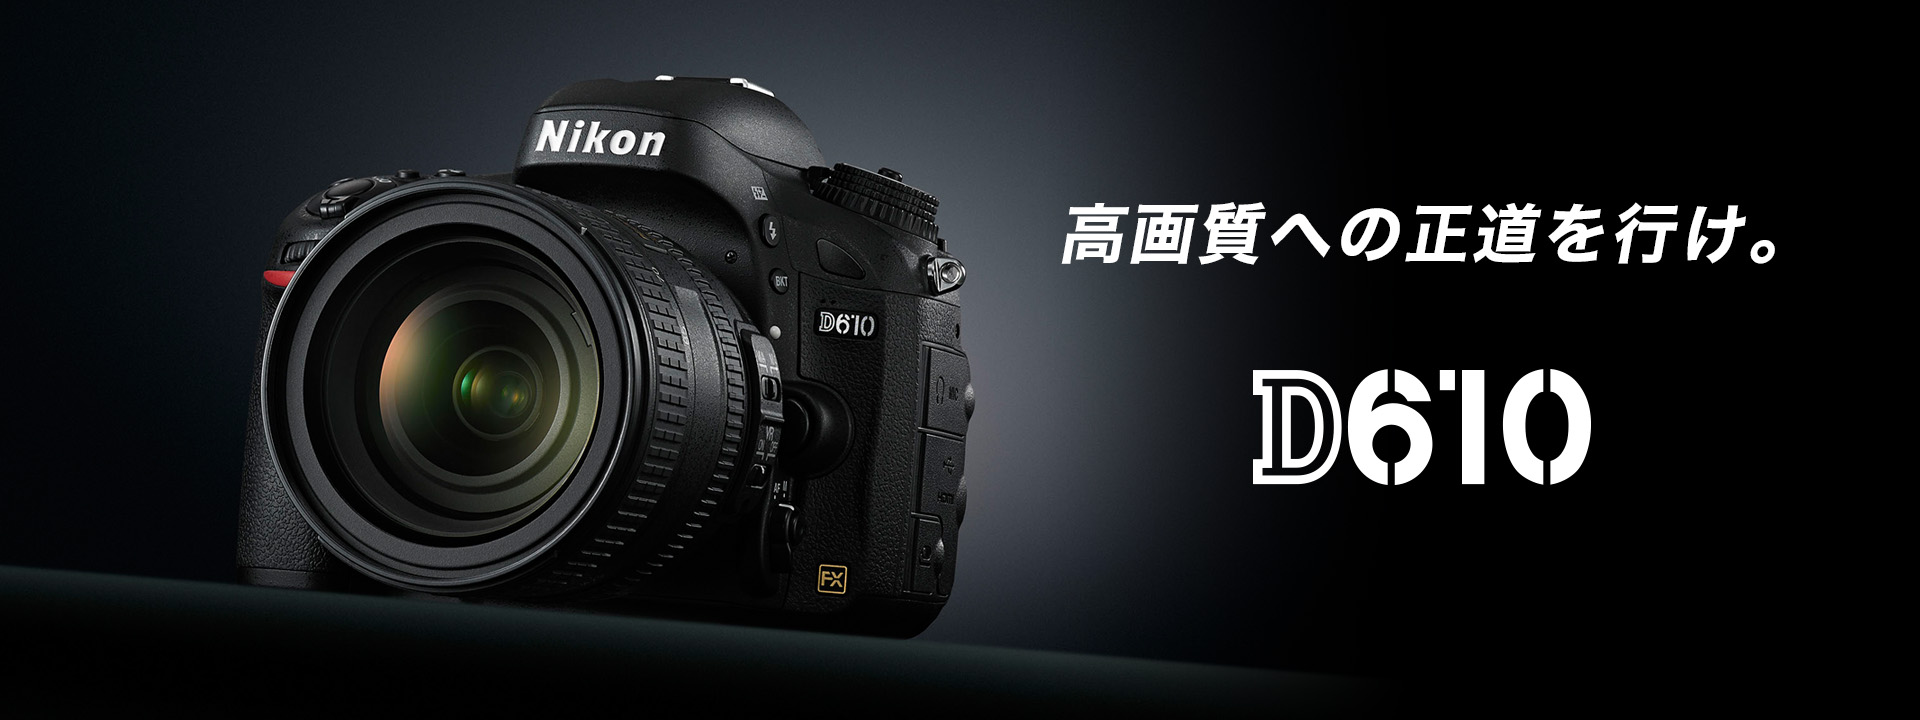 ★ショット数3412回の新品級★ Nikon D610